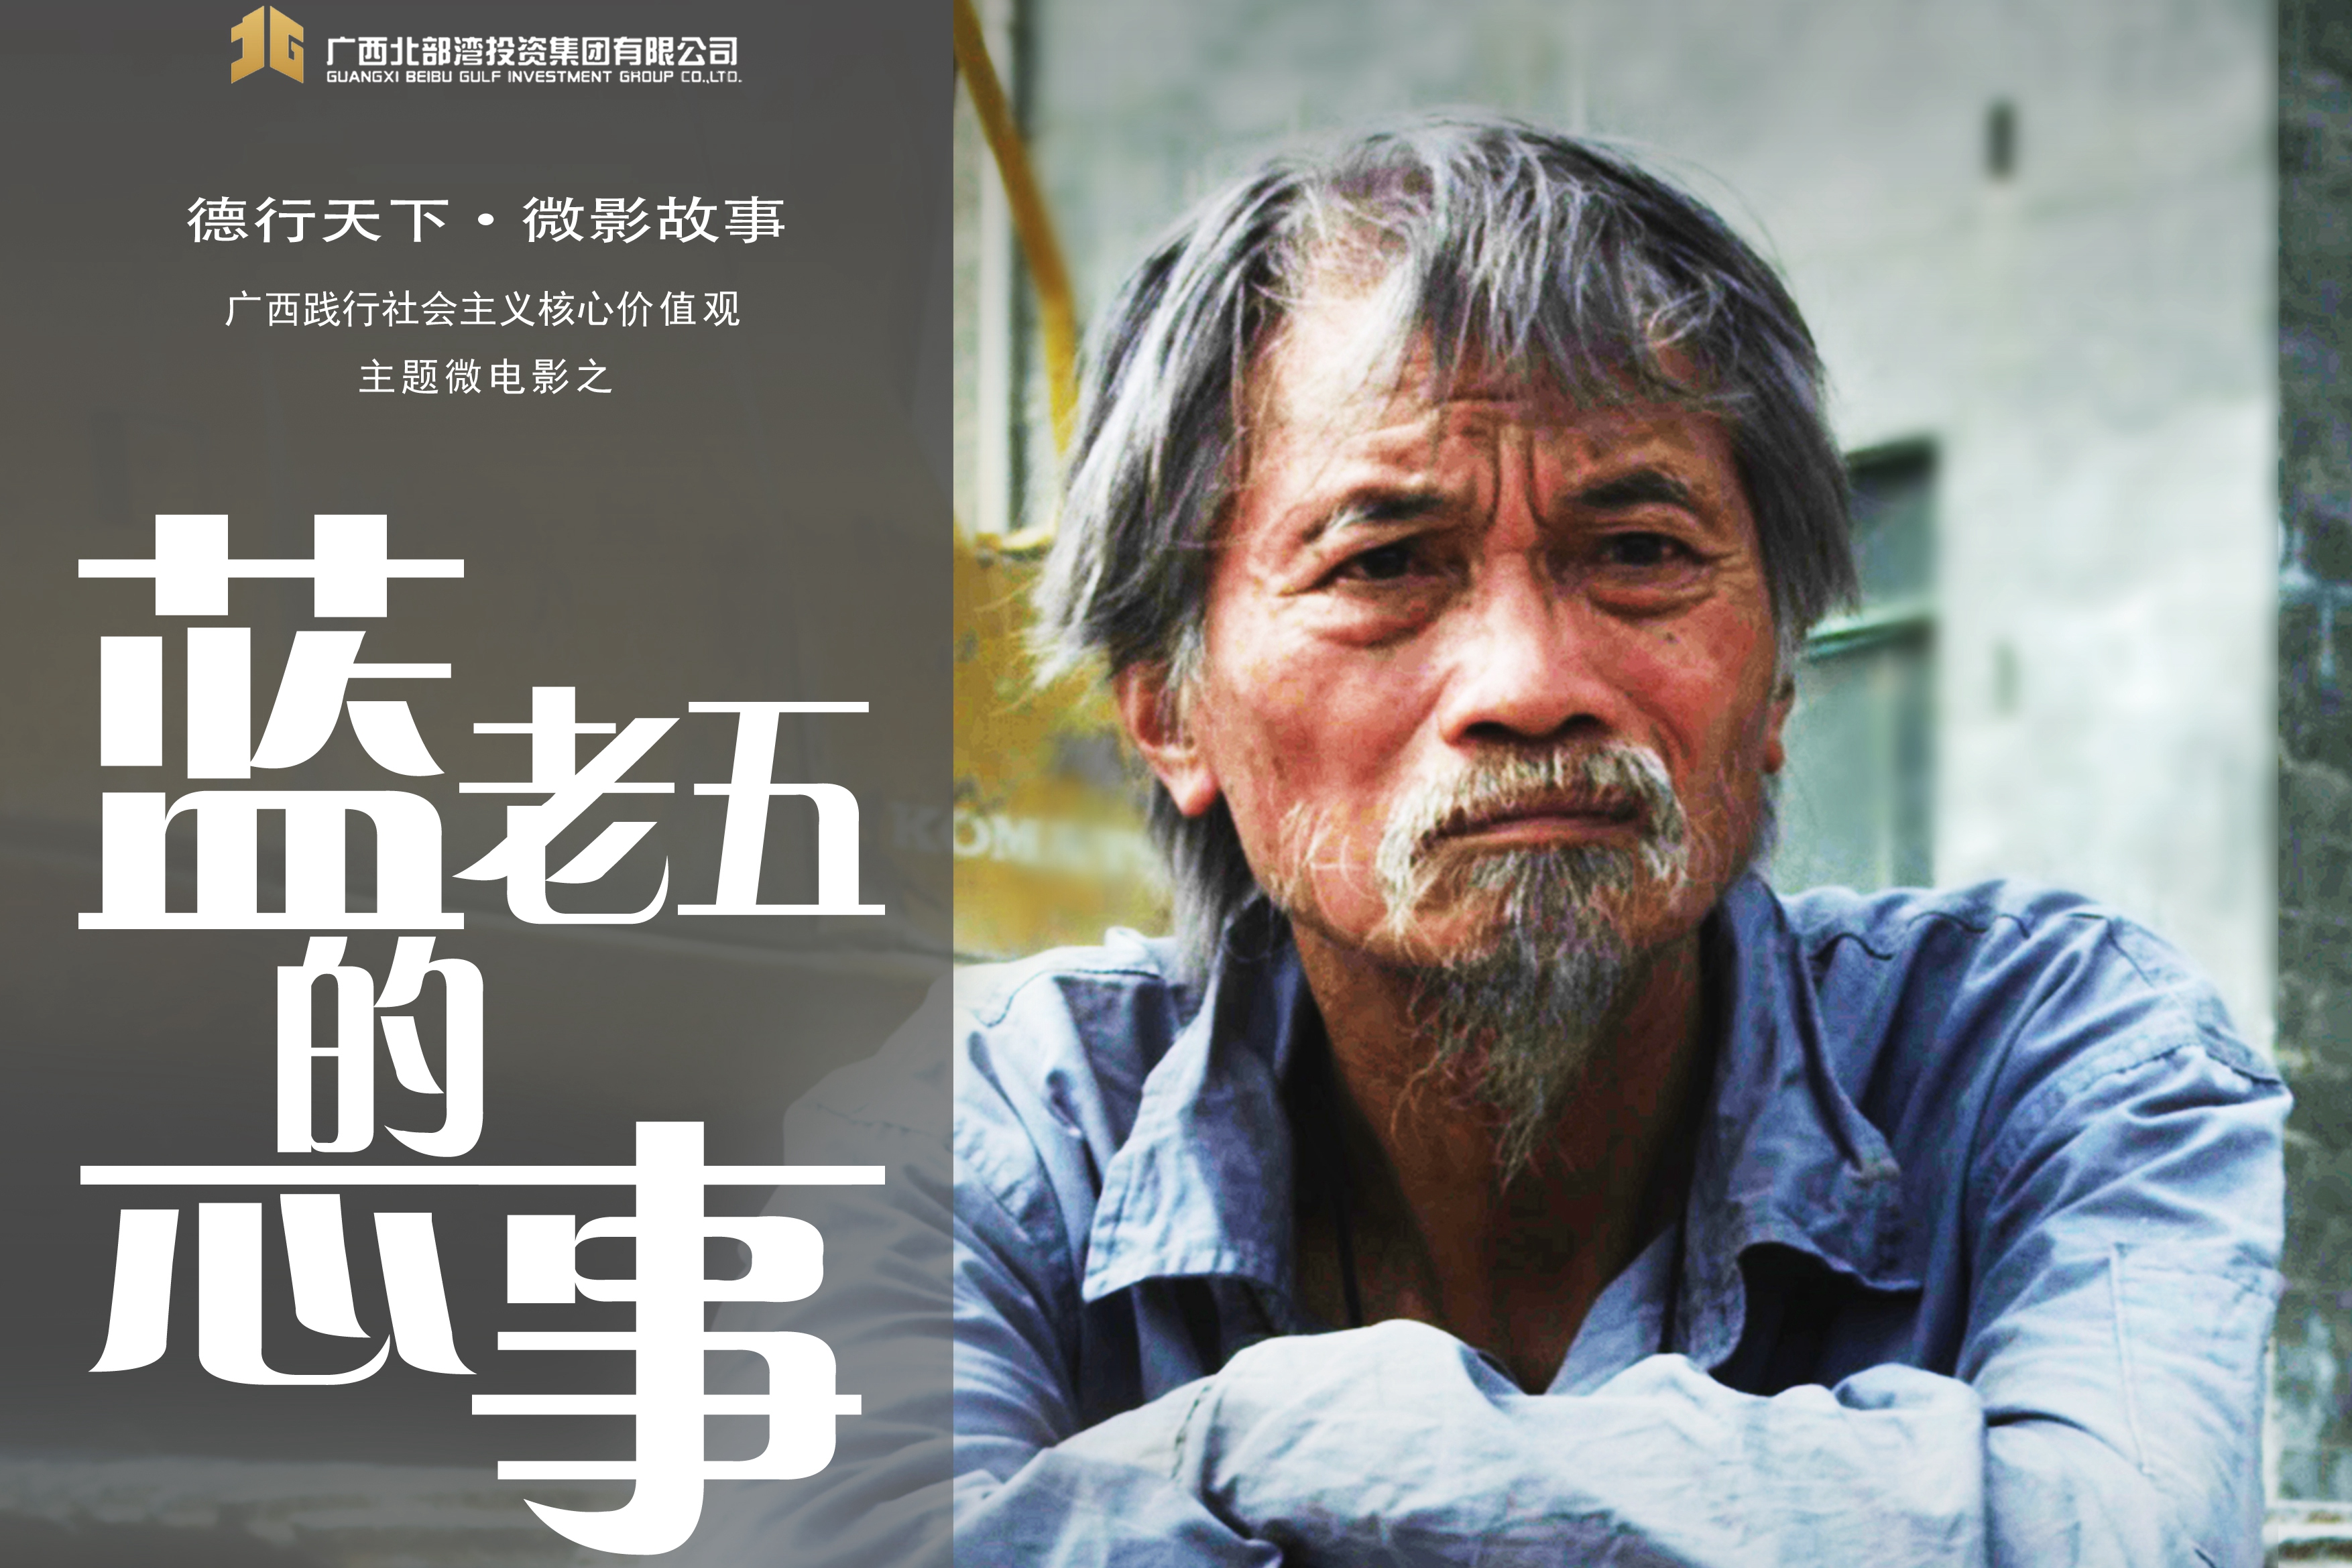 广西践行社会主义核心价值观获奖微电影《蓝老五的心事》